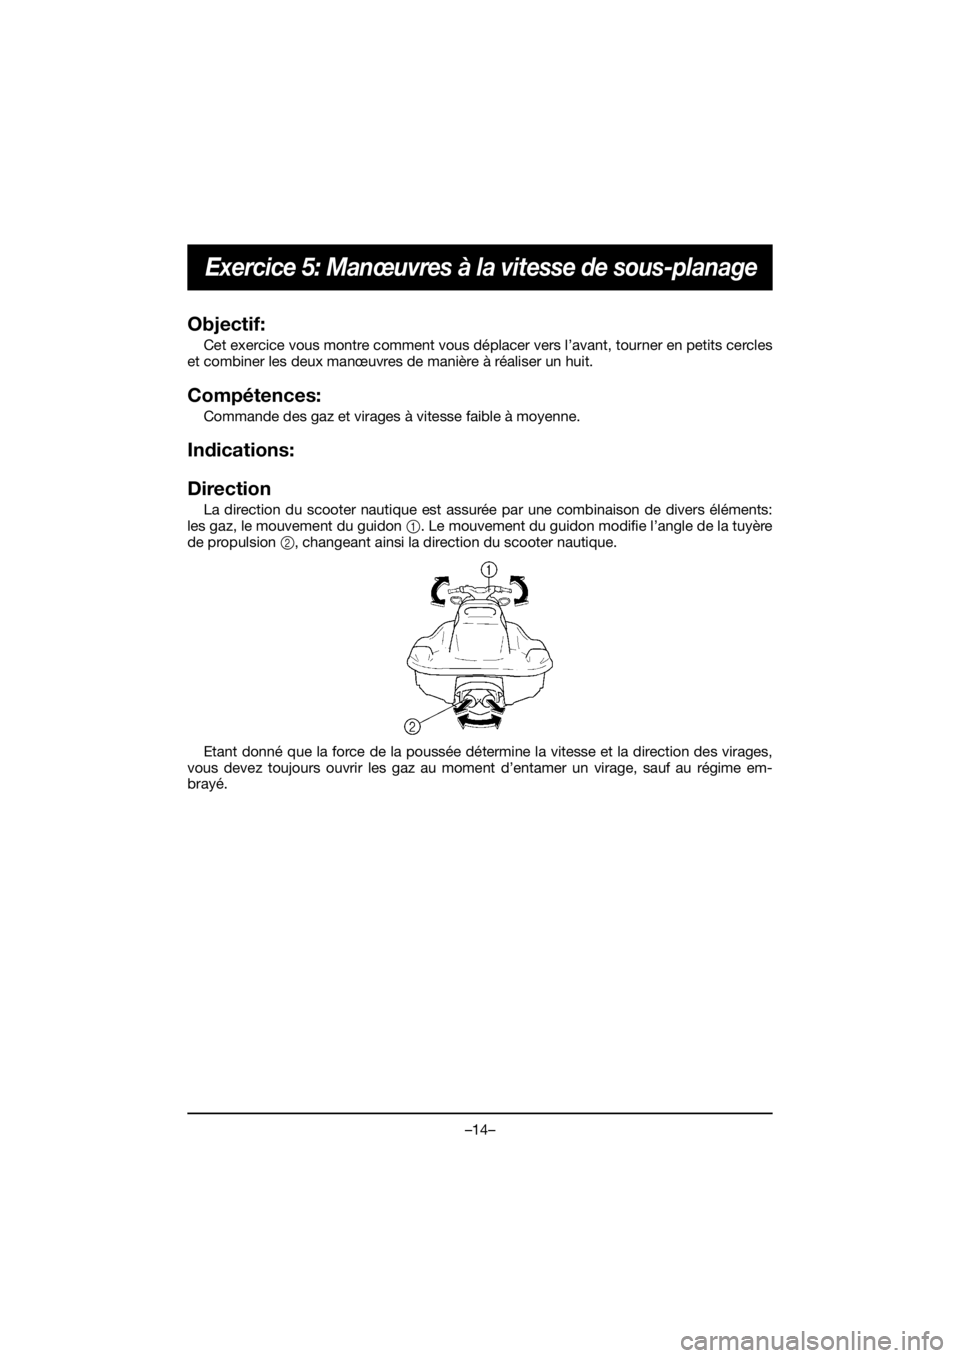 YAMAHA EX SPORT 2020  Notices Demploi (in French) –14–
Exercice 5: Manœuvres à la vitesse de sous-planage
Objectif: 
Cet exercice vous montre comment vous déplacer vers l’avant, tourner en petits cercles
et combiner les deux manœuvres de ma